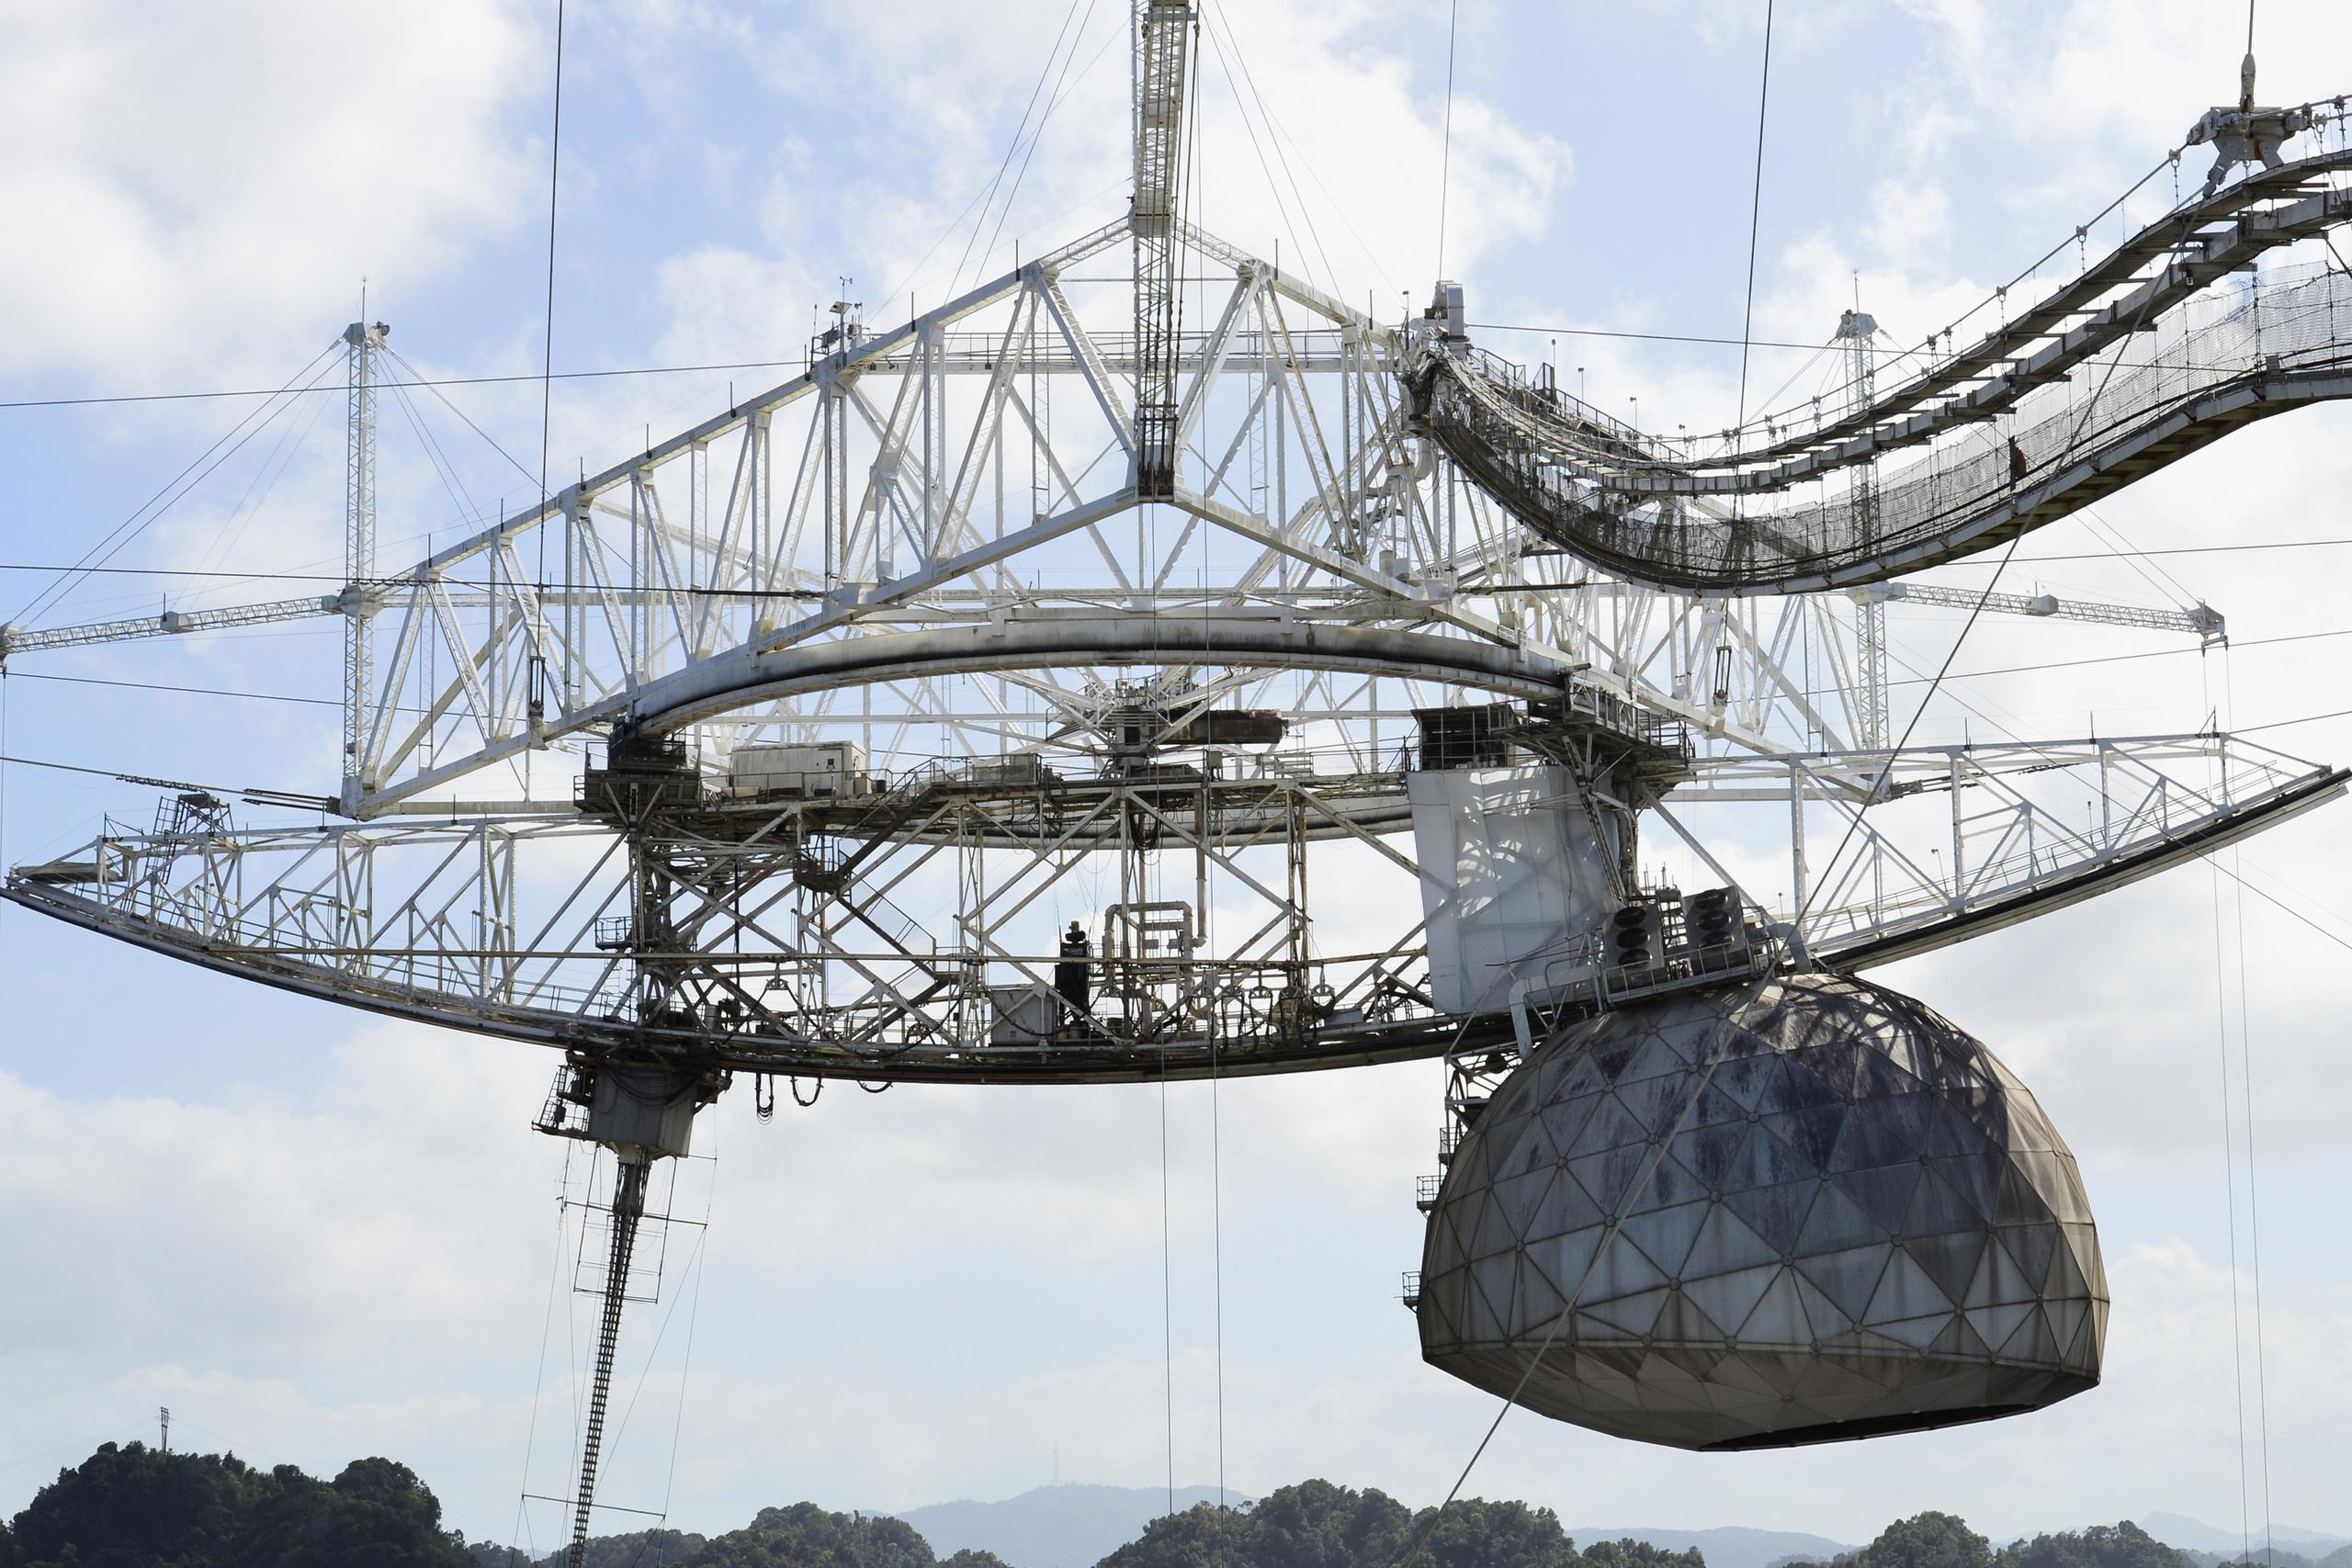 El radiotelescopio de Arecibo colapsó debido a fallas estructurales detectadas hace varios meses.